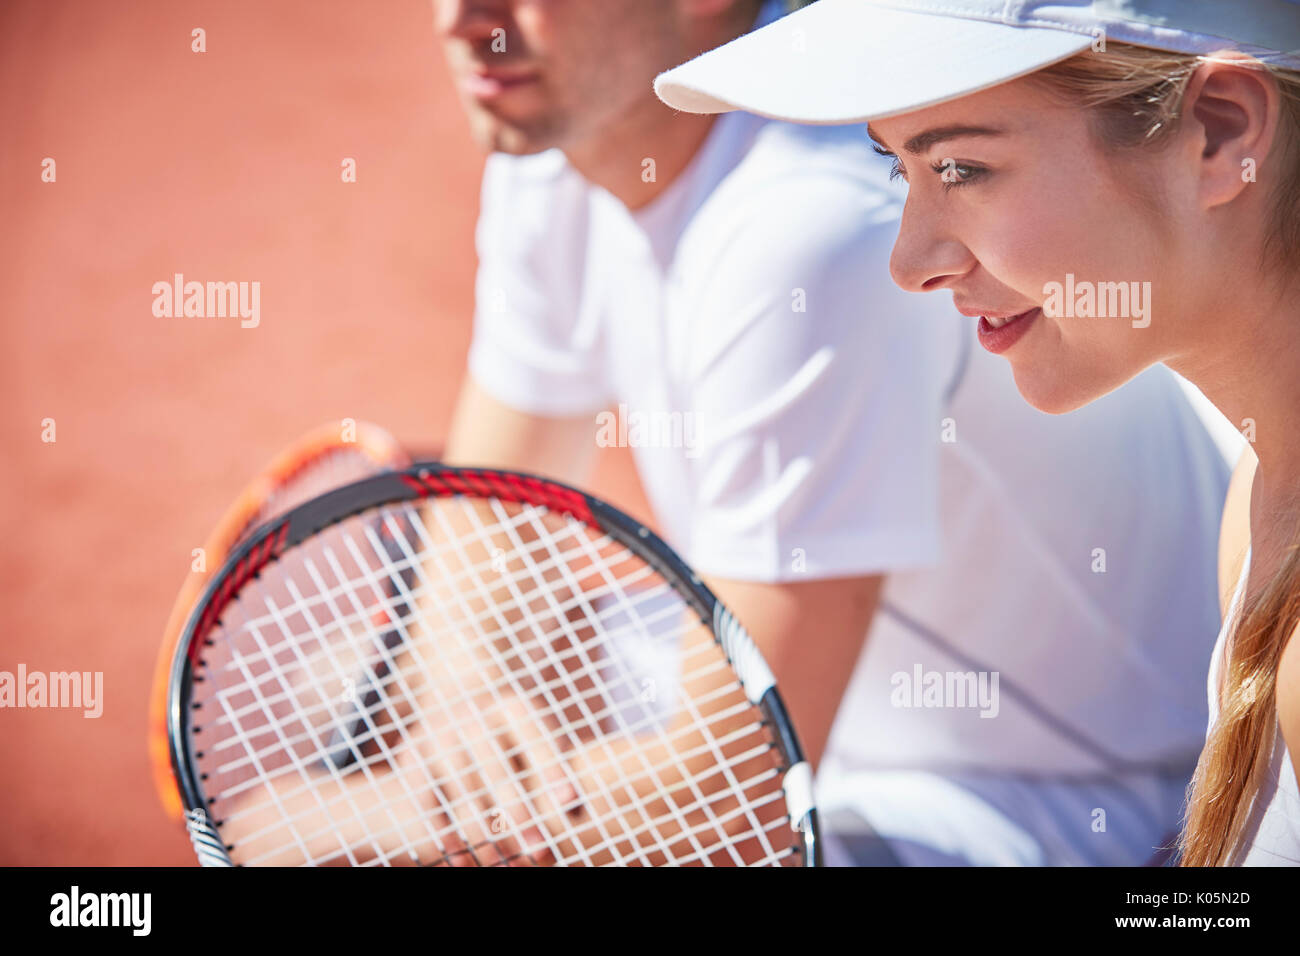 Sonriente, seguro joven jugando dobles de tenis, listos con raqueta de tenis Foto de stock